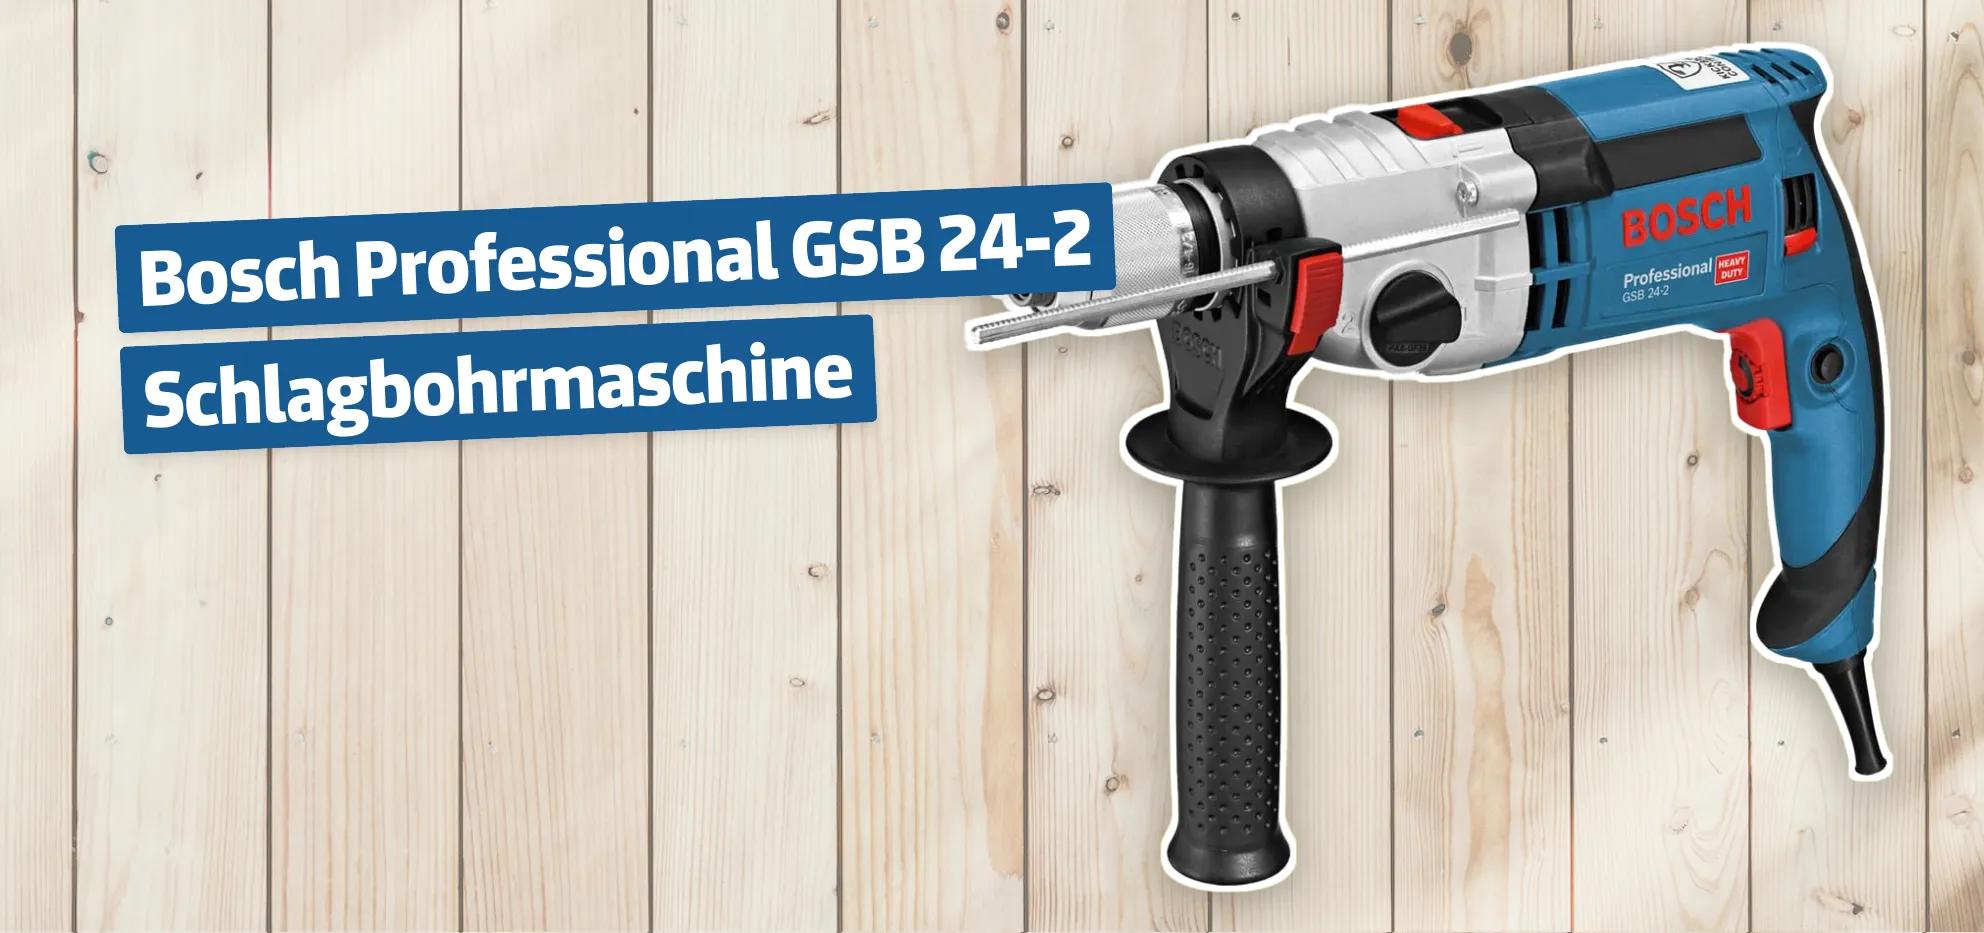 Bosch Professional GSB 24-2 Schlagbohrmaschine